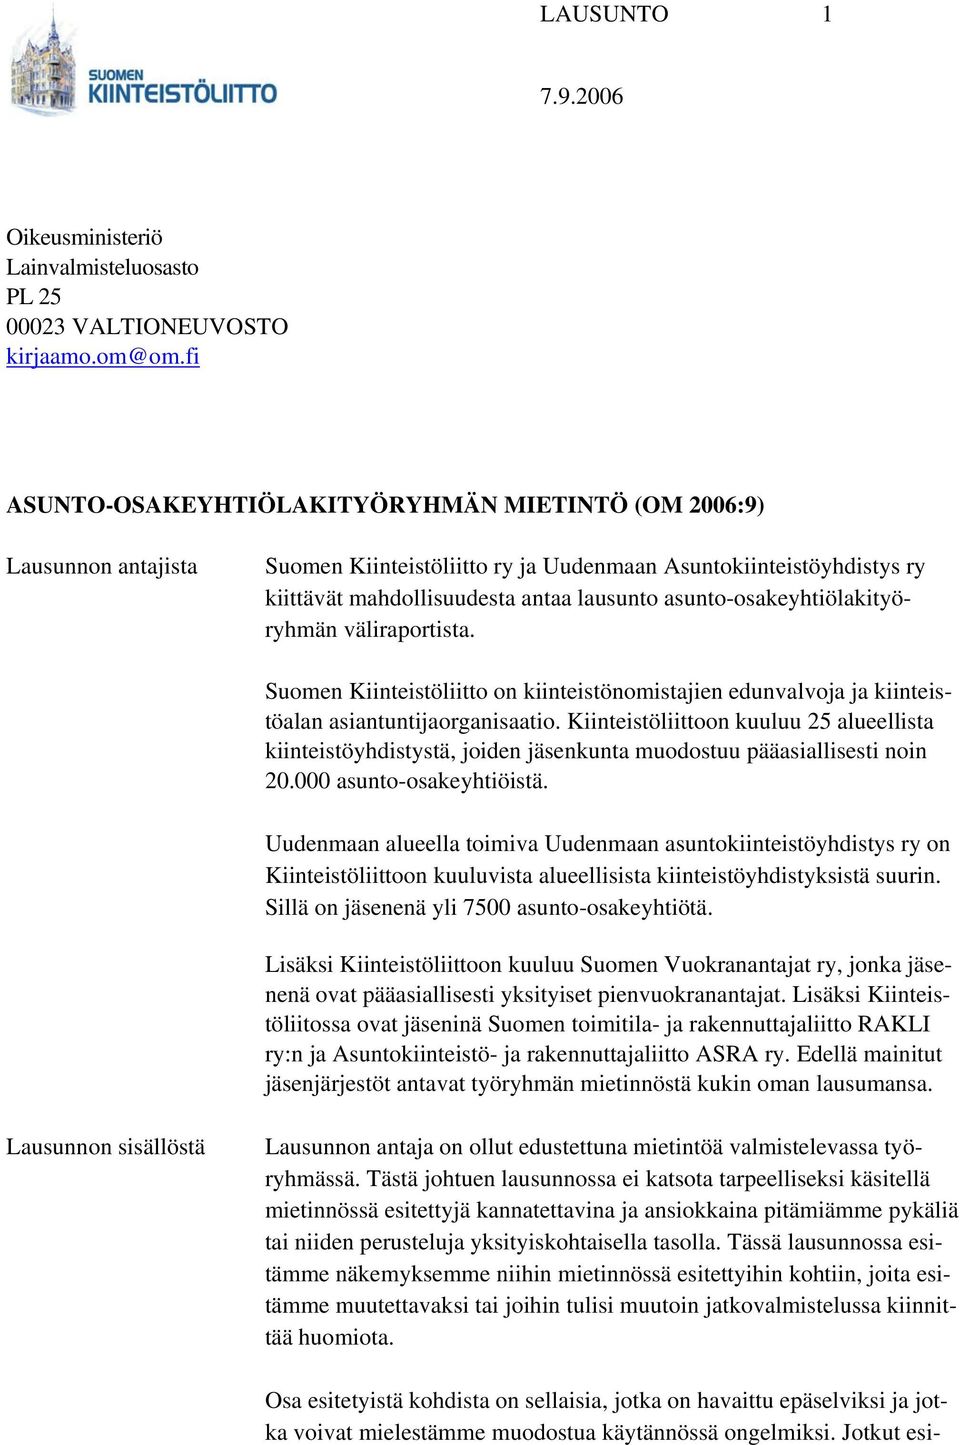 asunto-osakeyhtiölakityöryhmän väliraportista. Suomen Kiinteistöliitto on kiinteistönomistajien edunvalvoja ja kiinteistöalan asiantuntijaorganisaatio.